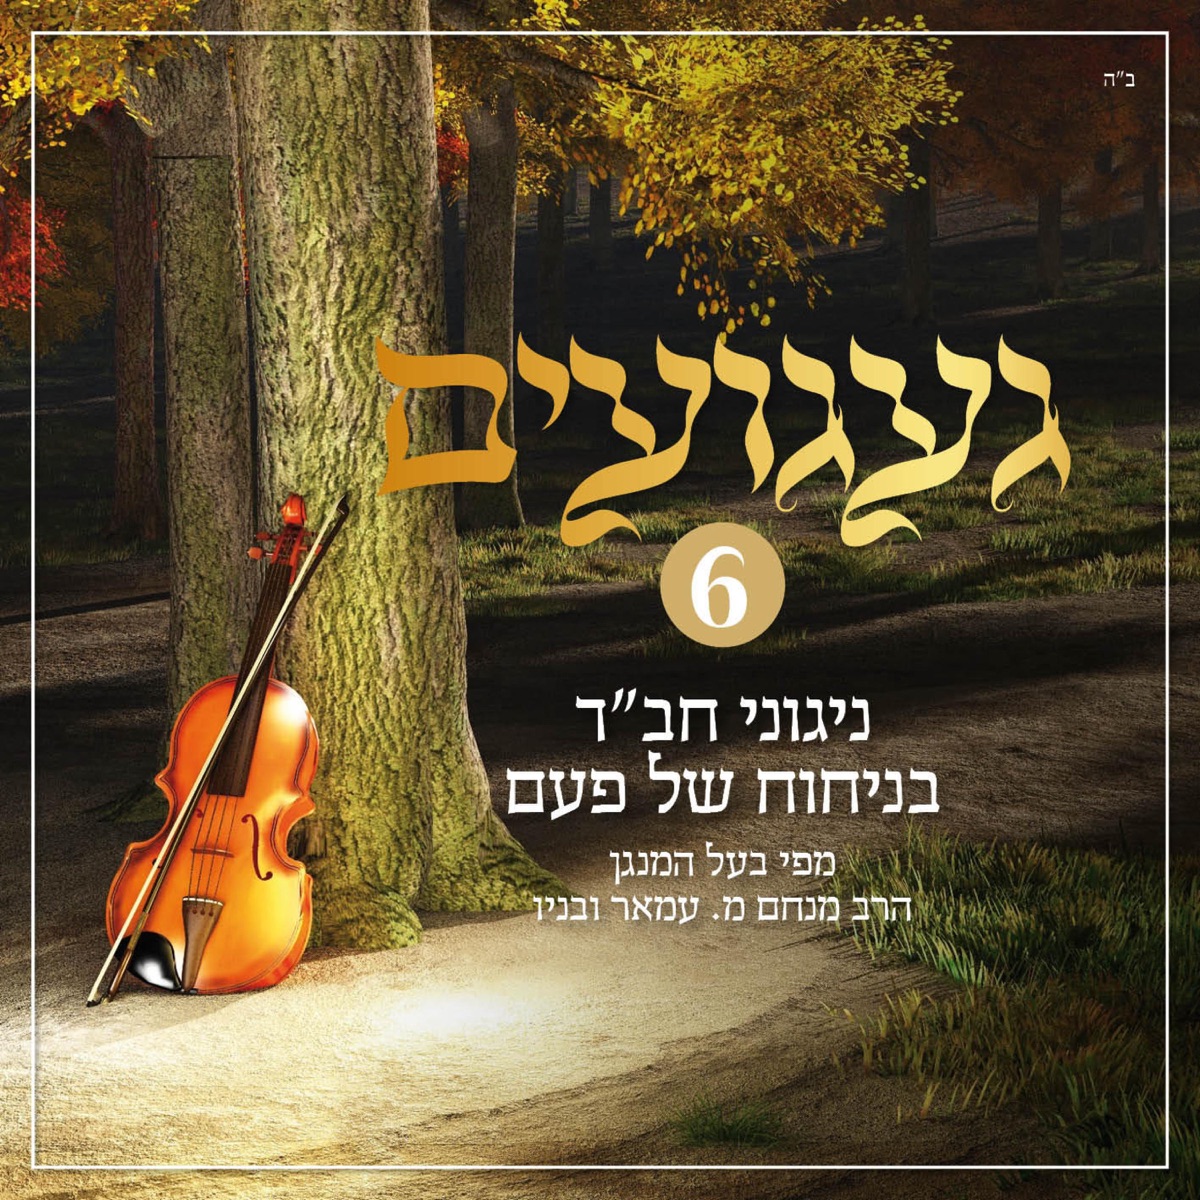 געגועים - ניגוני חב"ד בניחוח של פעם 3 by Rabbi Menachem Amar on Apple Music